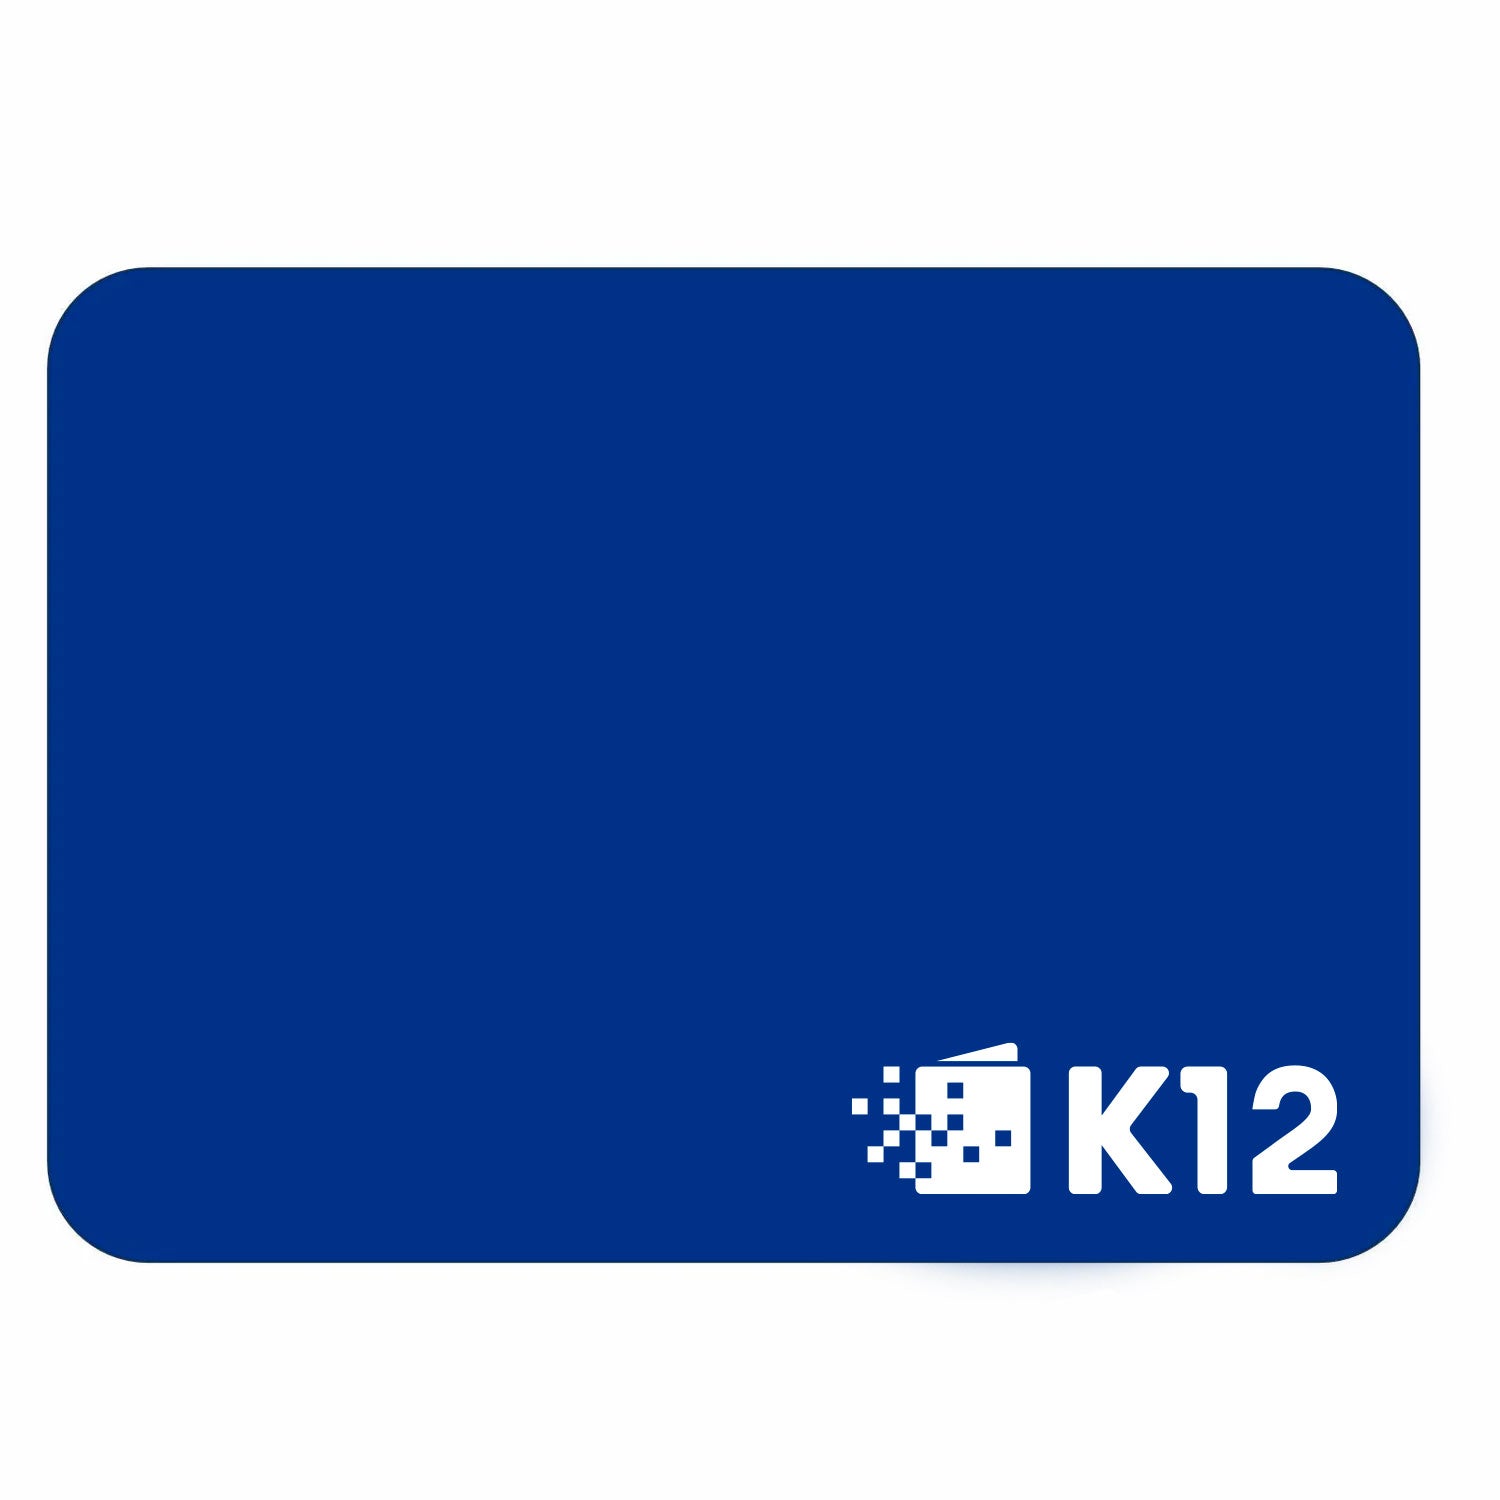 K12 LOGO 7.75" X 9.75" MOUSEPAD